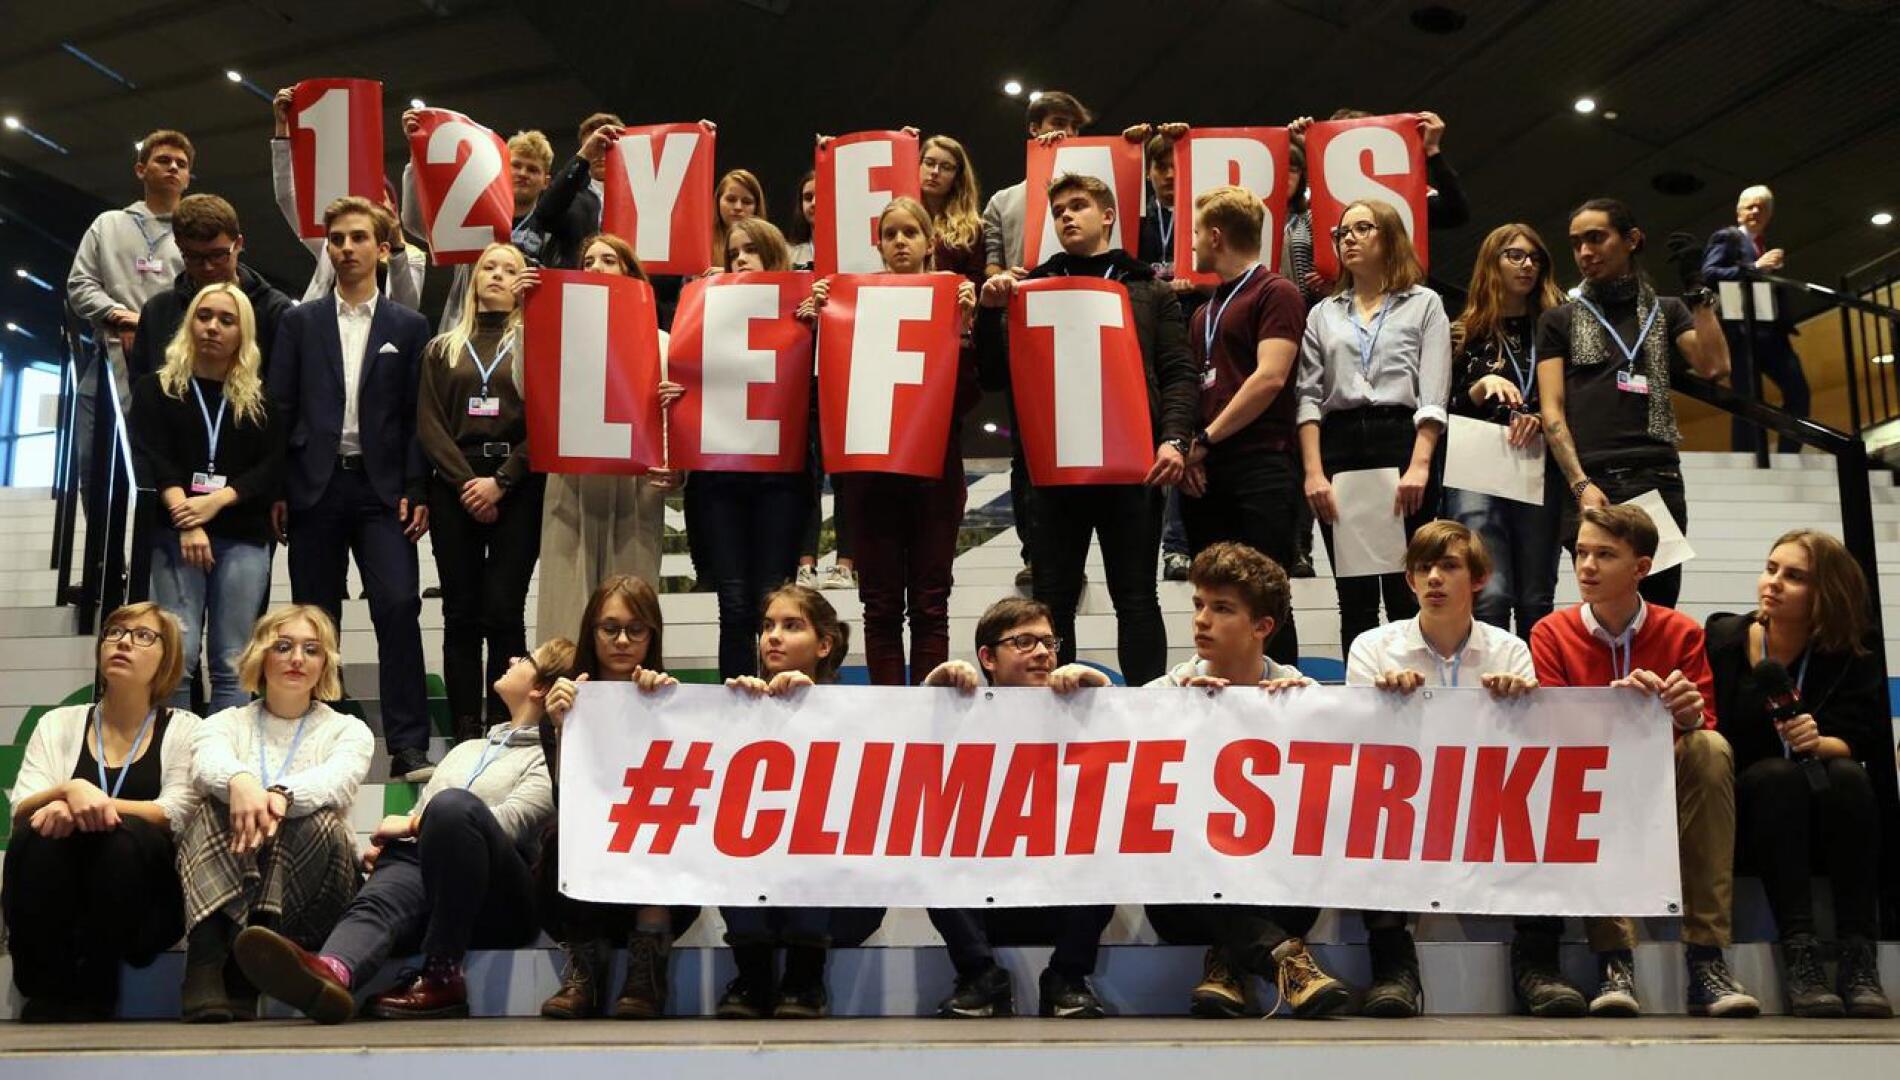 Nuoret ilmastoaktivistit osallistuivat ilmastolakko-mielenosoitukseen Katowicen ilmastokokouksen pitopaikalla perjantaina.